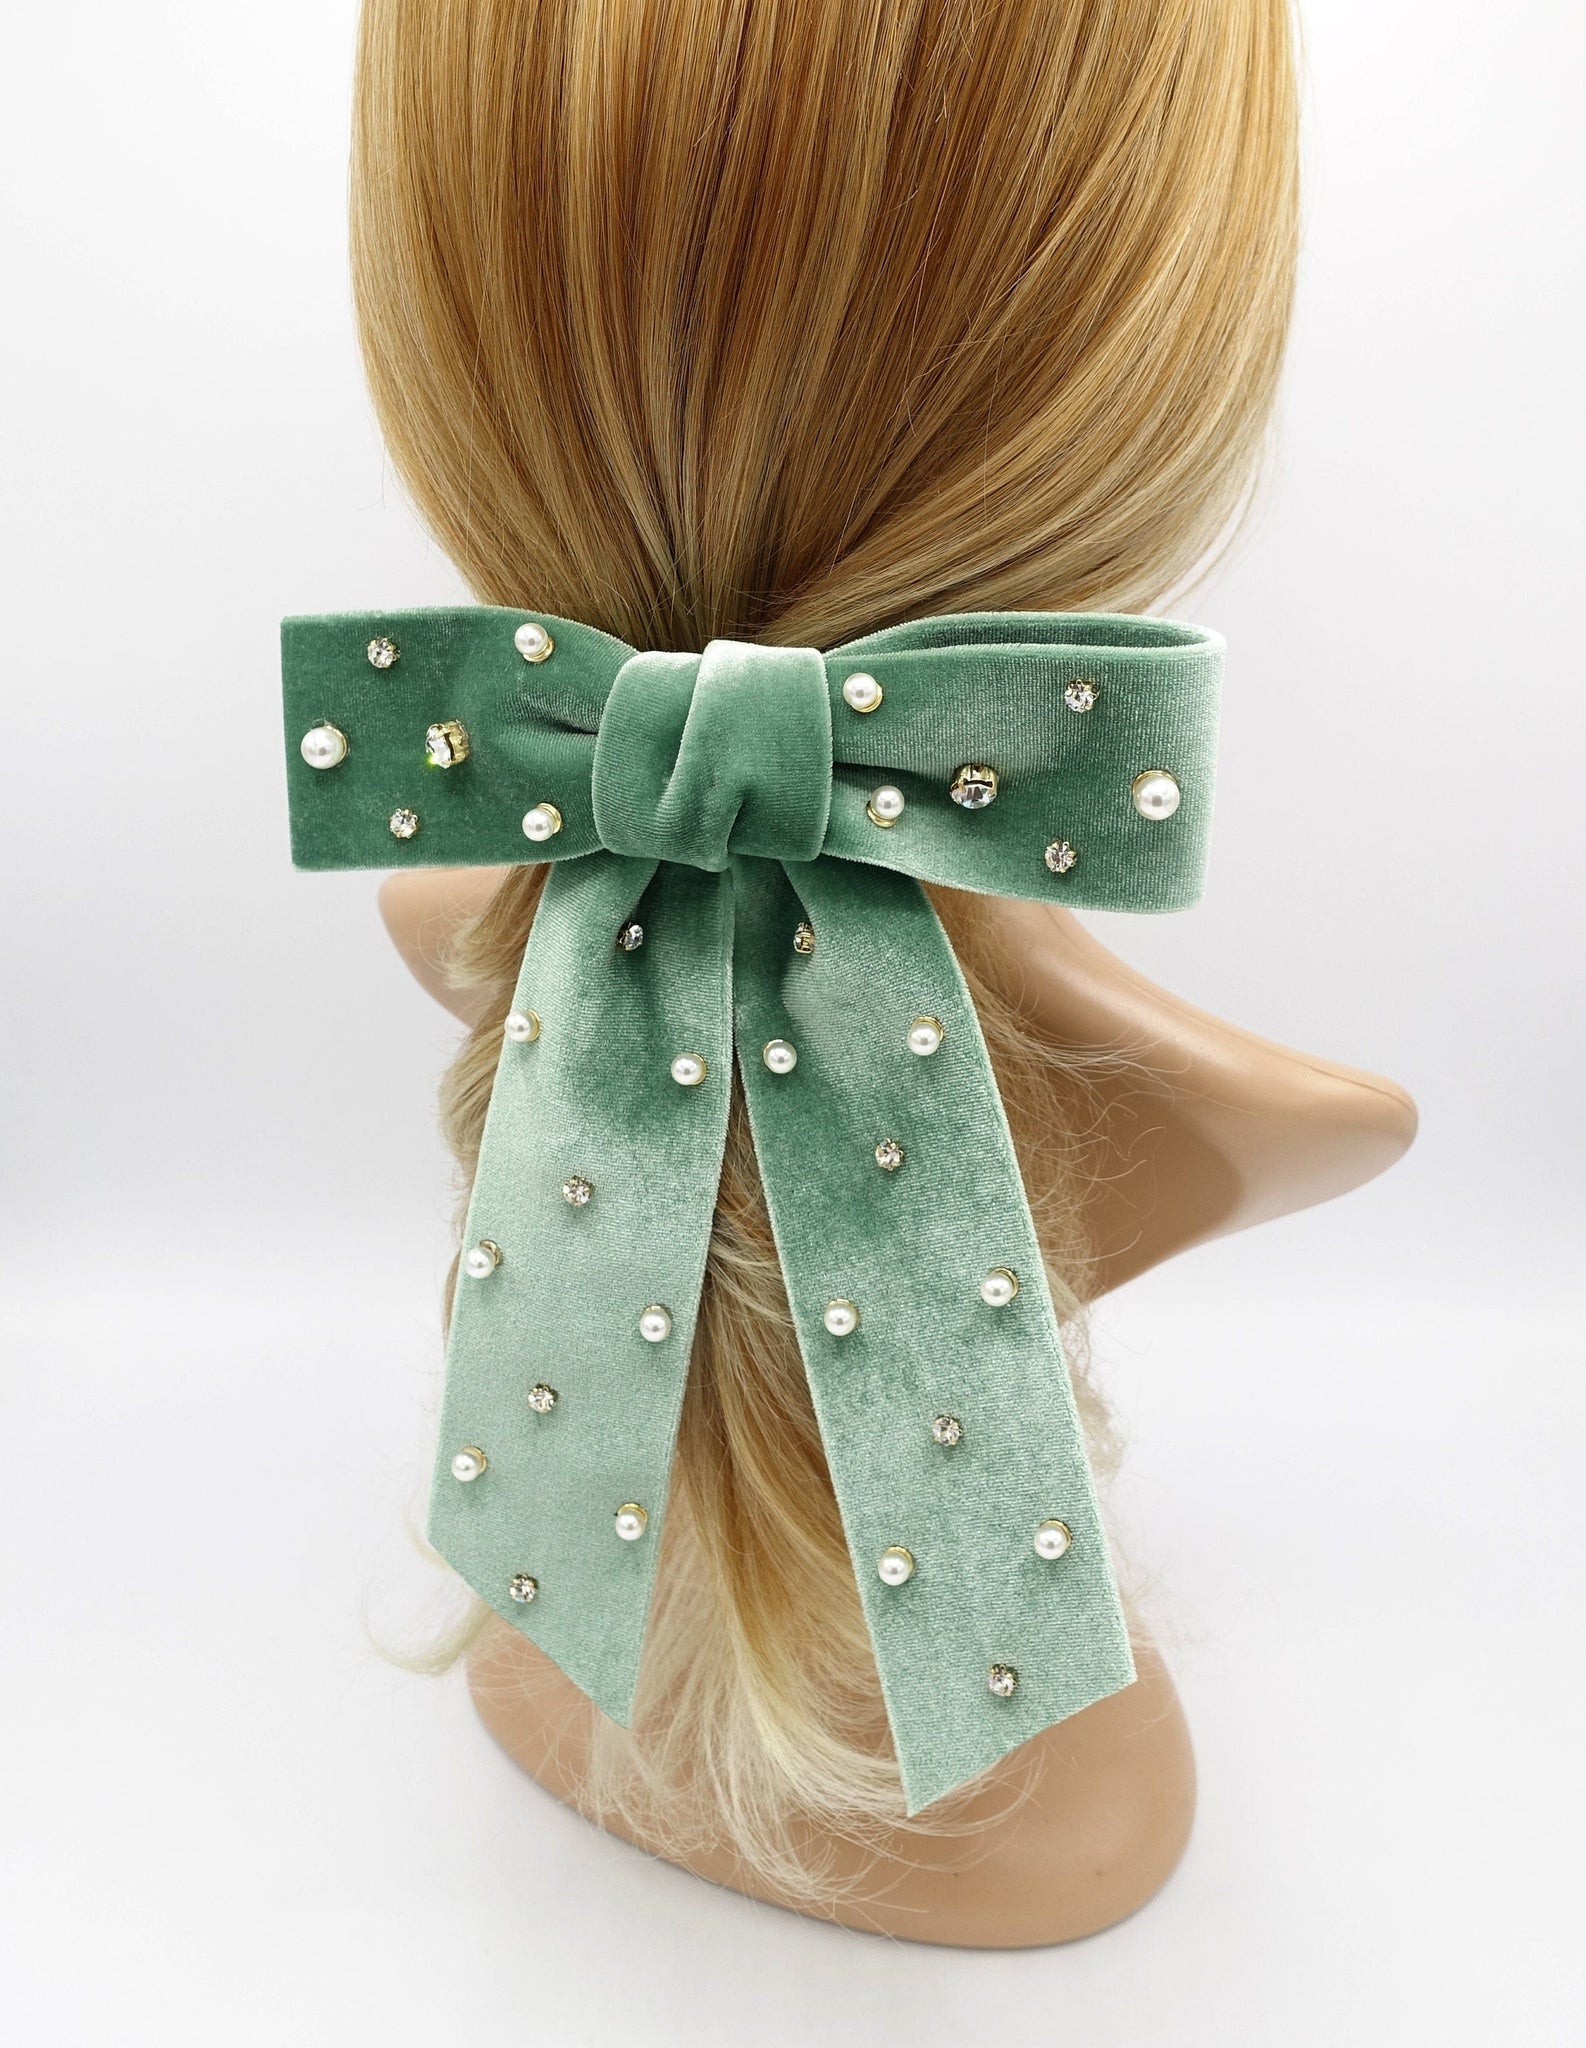 veryshine.com Barrette (Bow) velvet hair bow, pearl hair bow, rhinestone hair bow, embellished hair bow for women